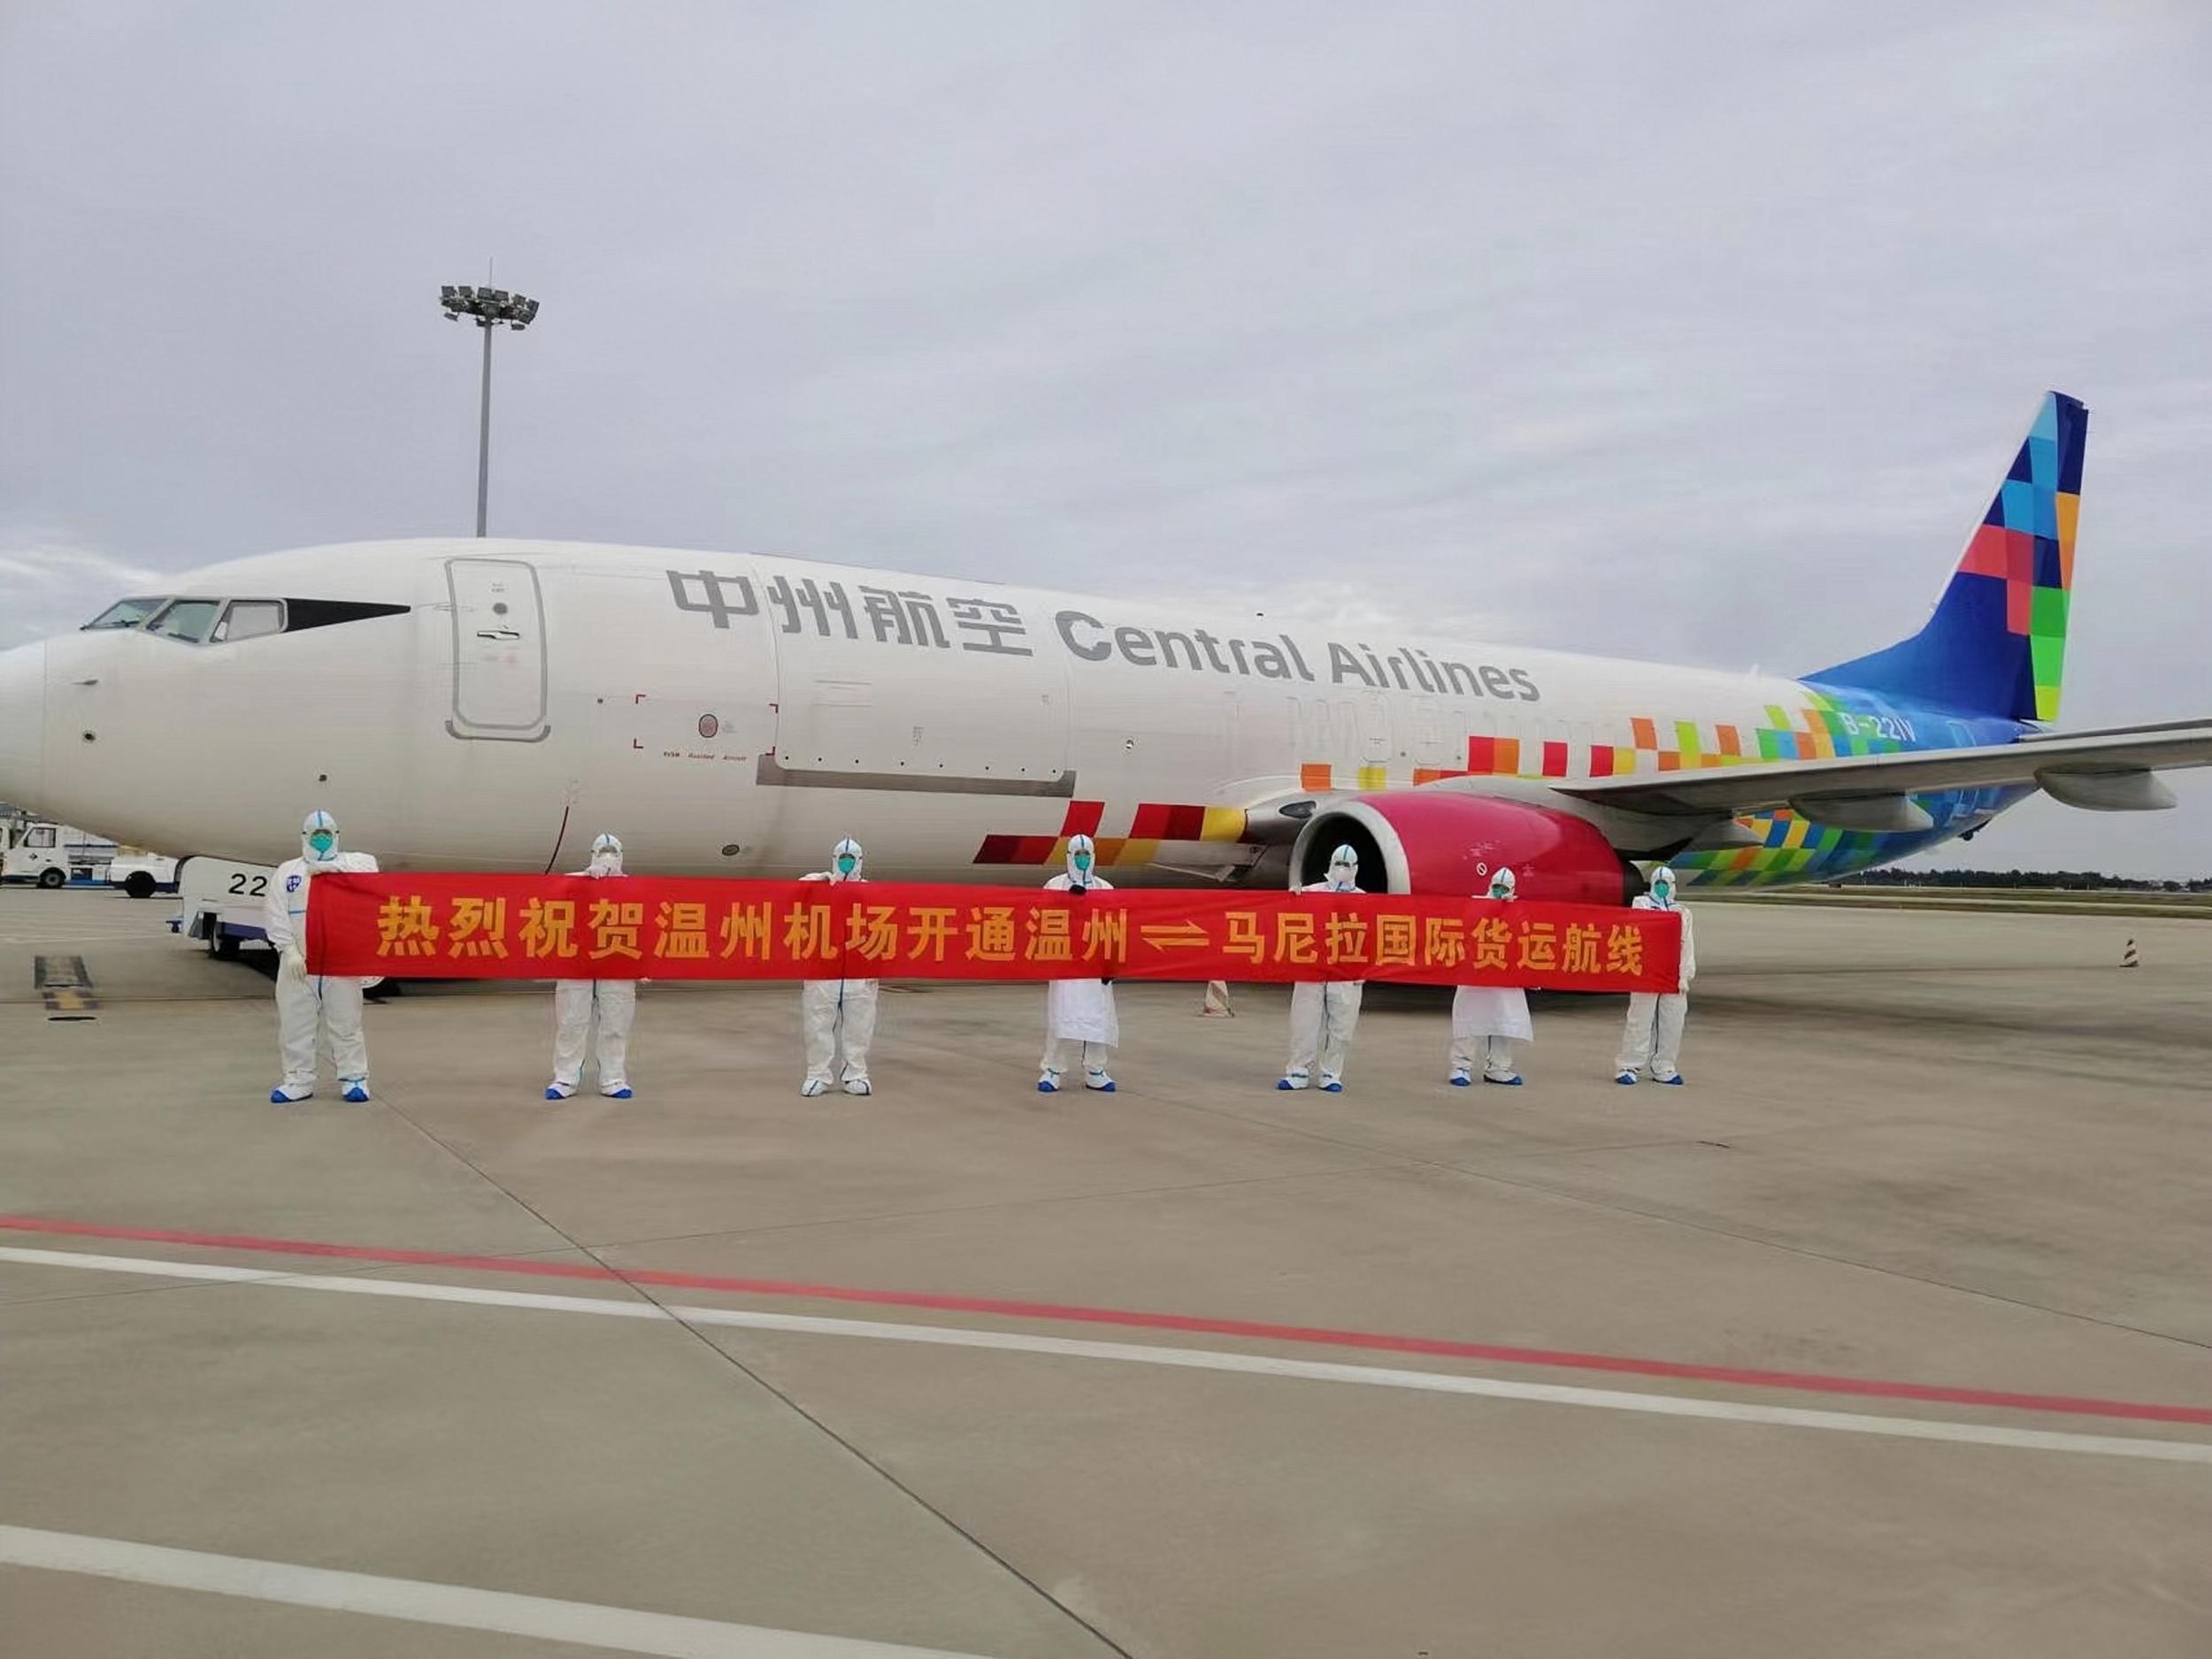 助力RCEP空运贸易 温州往返马尼拉国际货运航线开通